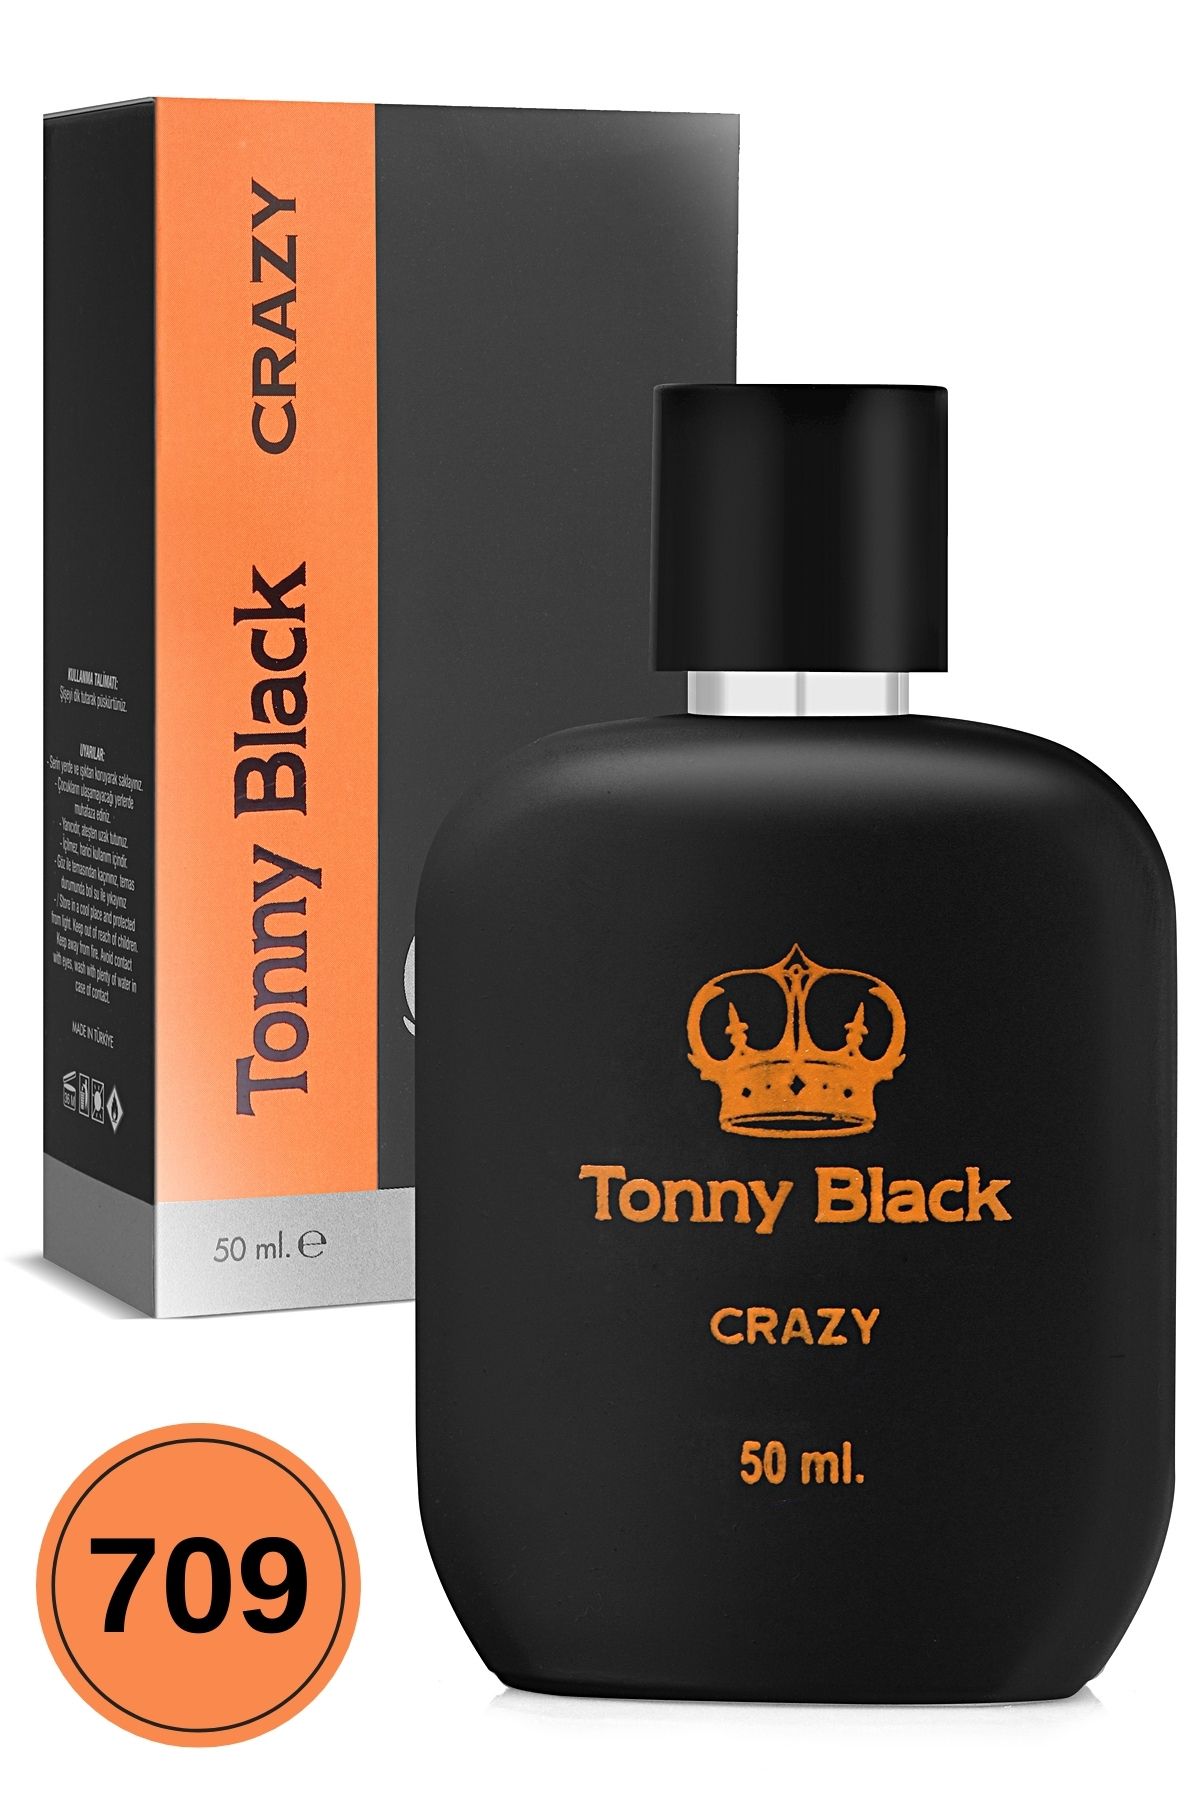 Tonny Black Orijinal Erkek 709 Özel Seri Uzun Süre Kalıcı Etkili Crazy Özel Serisi Lüks Erkek Parfüm 50ml